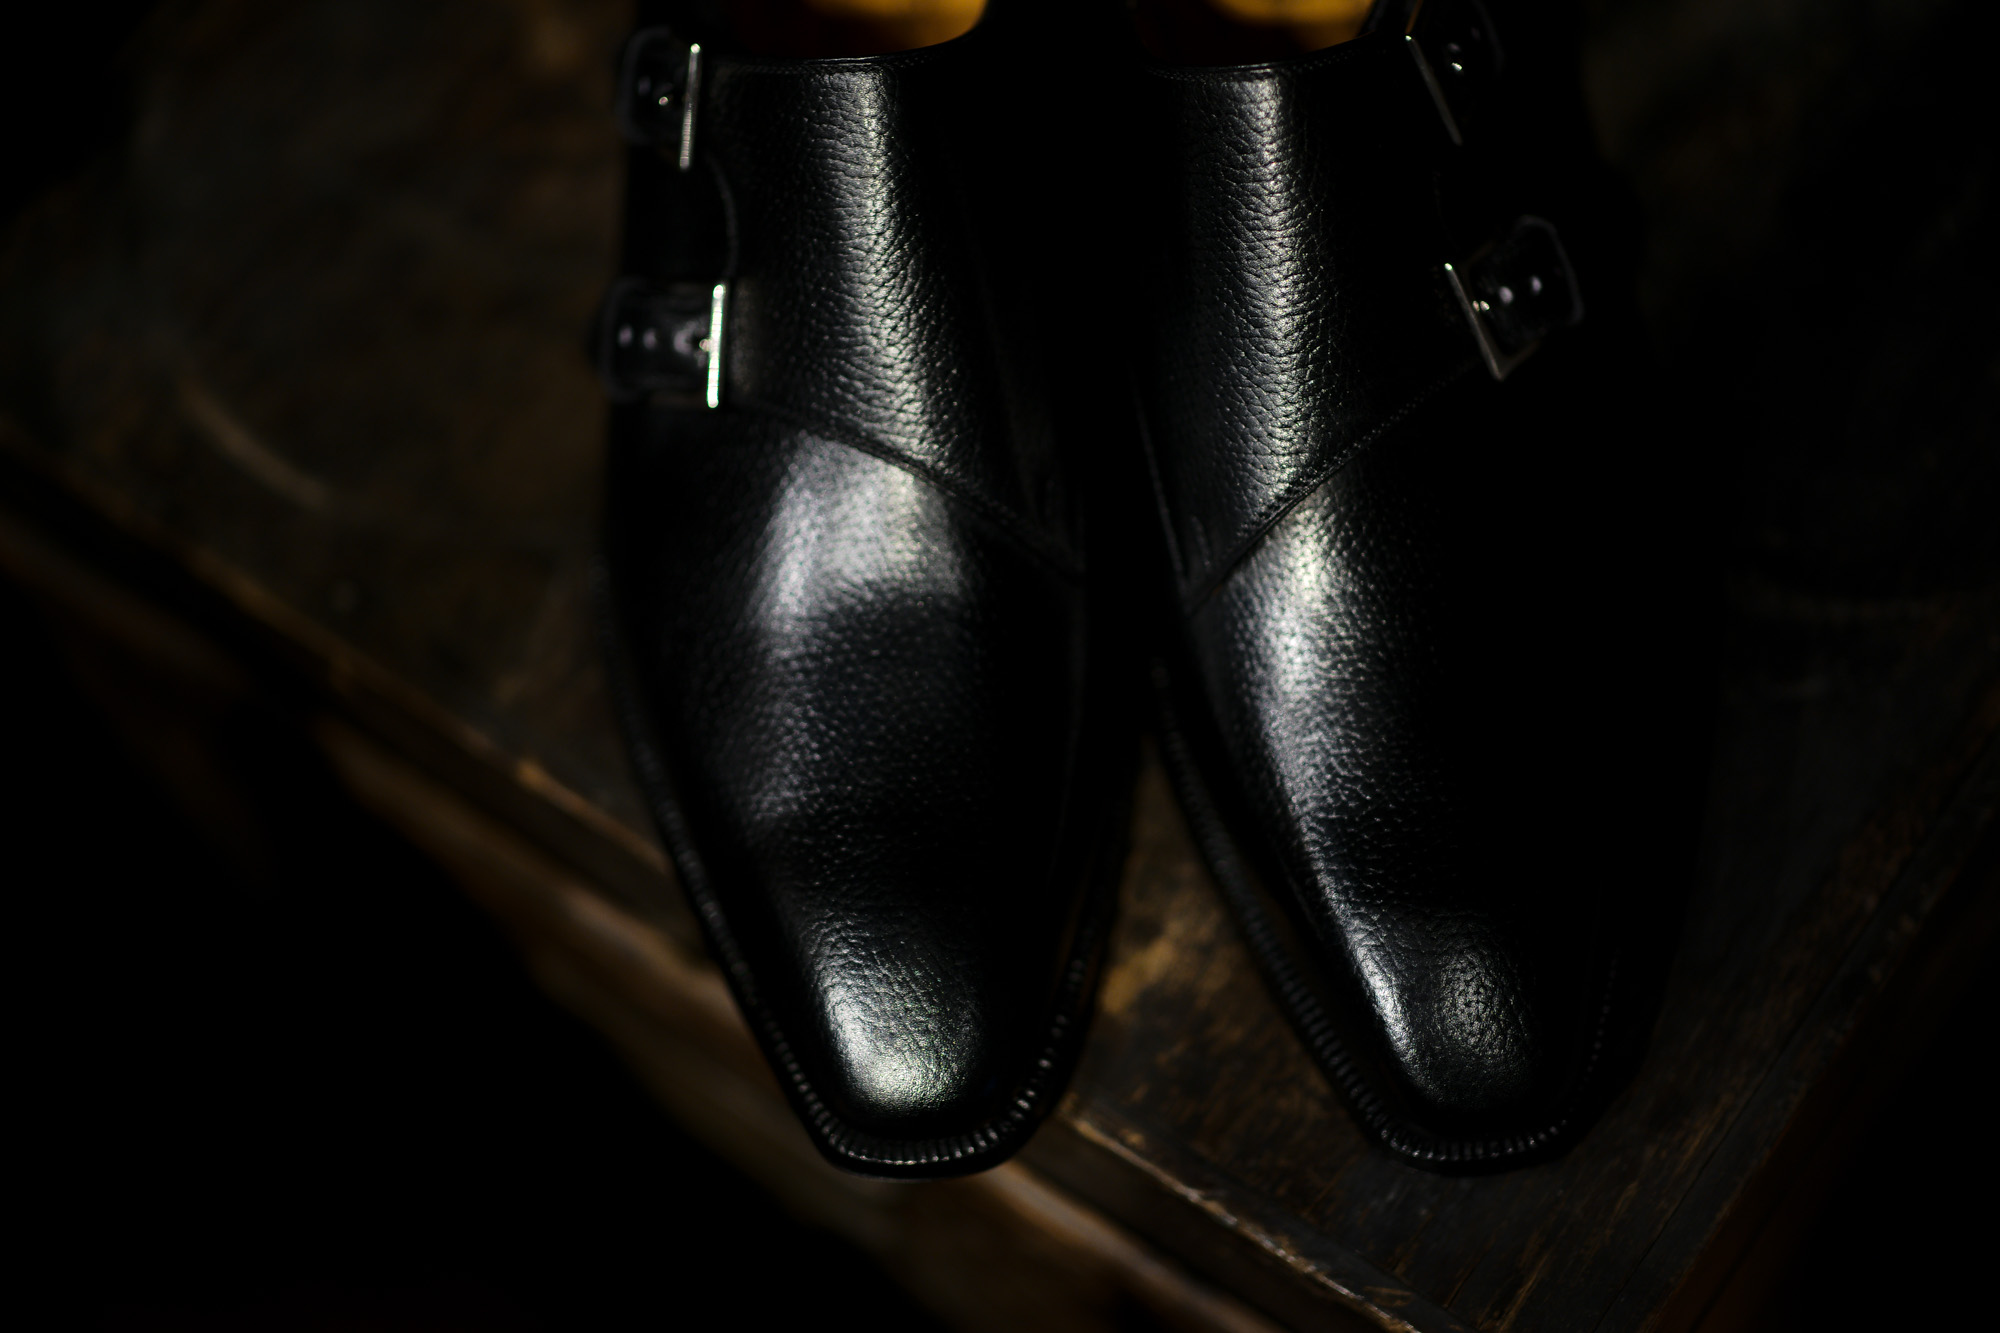 ENZO BONAFE(エンツォボナフェ) EB-36 Double Monk Strap Shoes INCA Leather ダブルモンクストラップシューズ NERO (ブラック) made in italy (イタリア製) 2018 秋冬新作 【Special Model】enzobonafe eb36 エンツォボナフェ altoediritto アルトエデリット